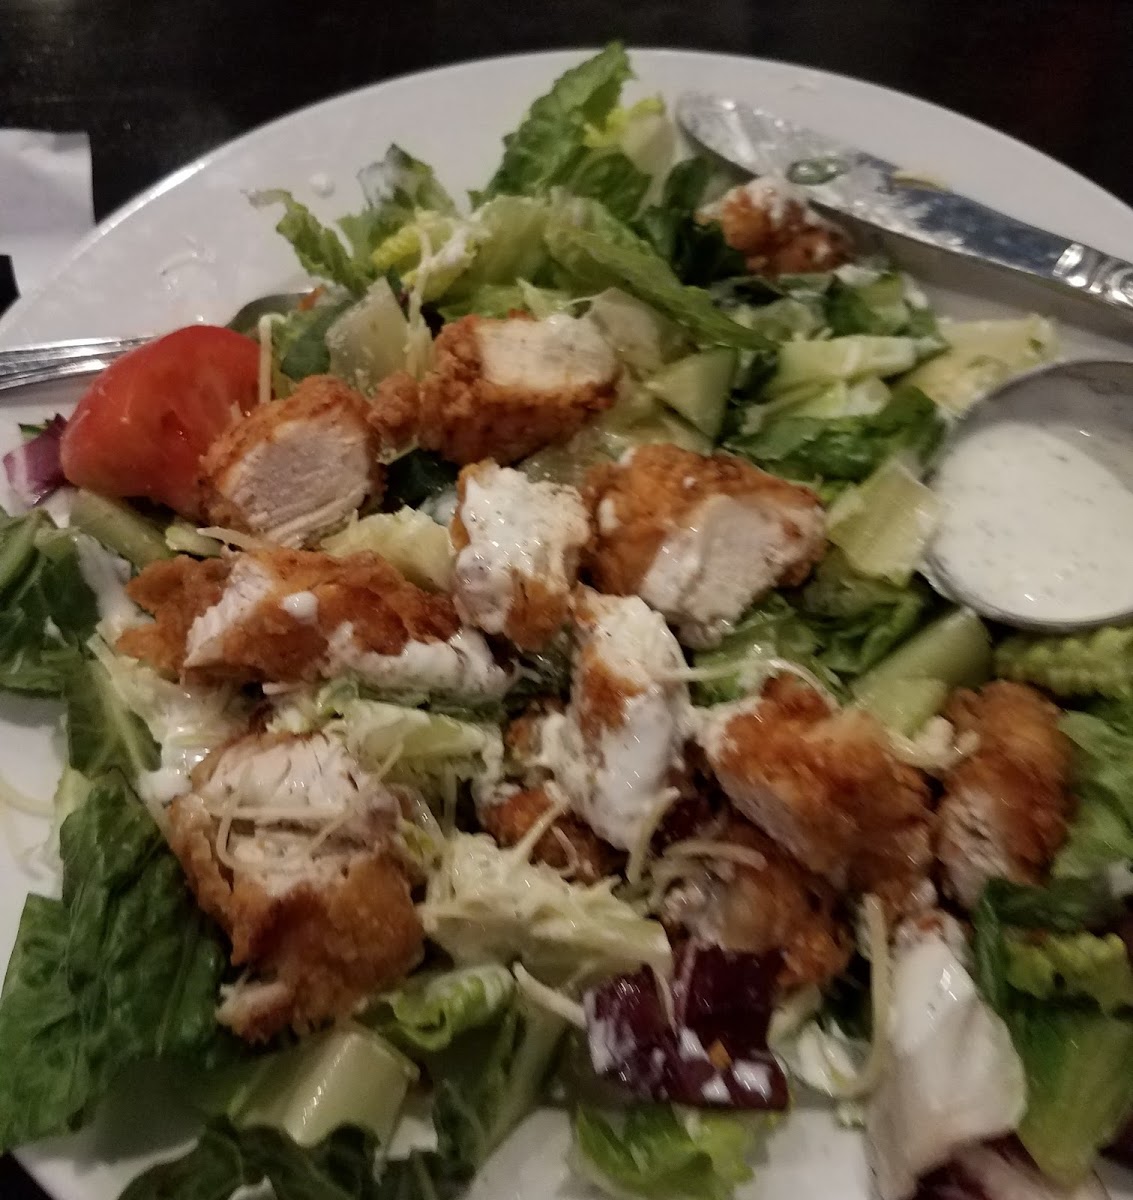 Delicious chicken salad!